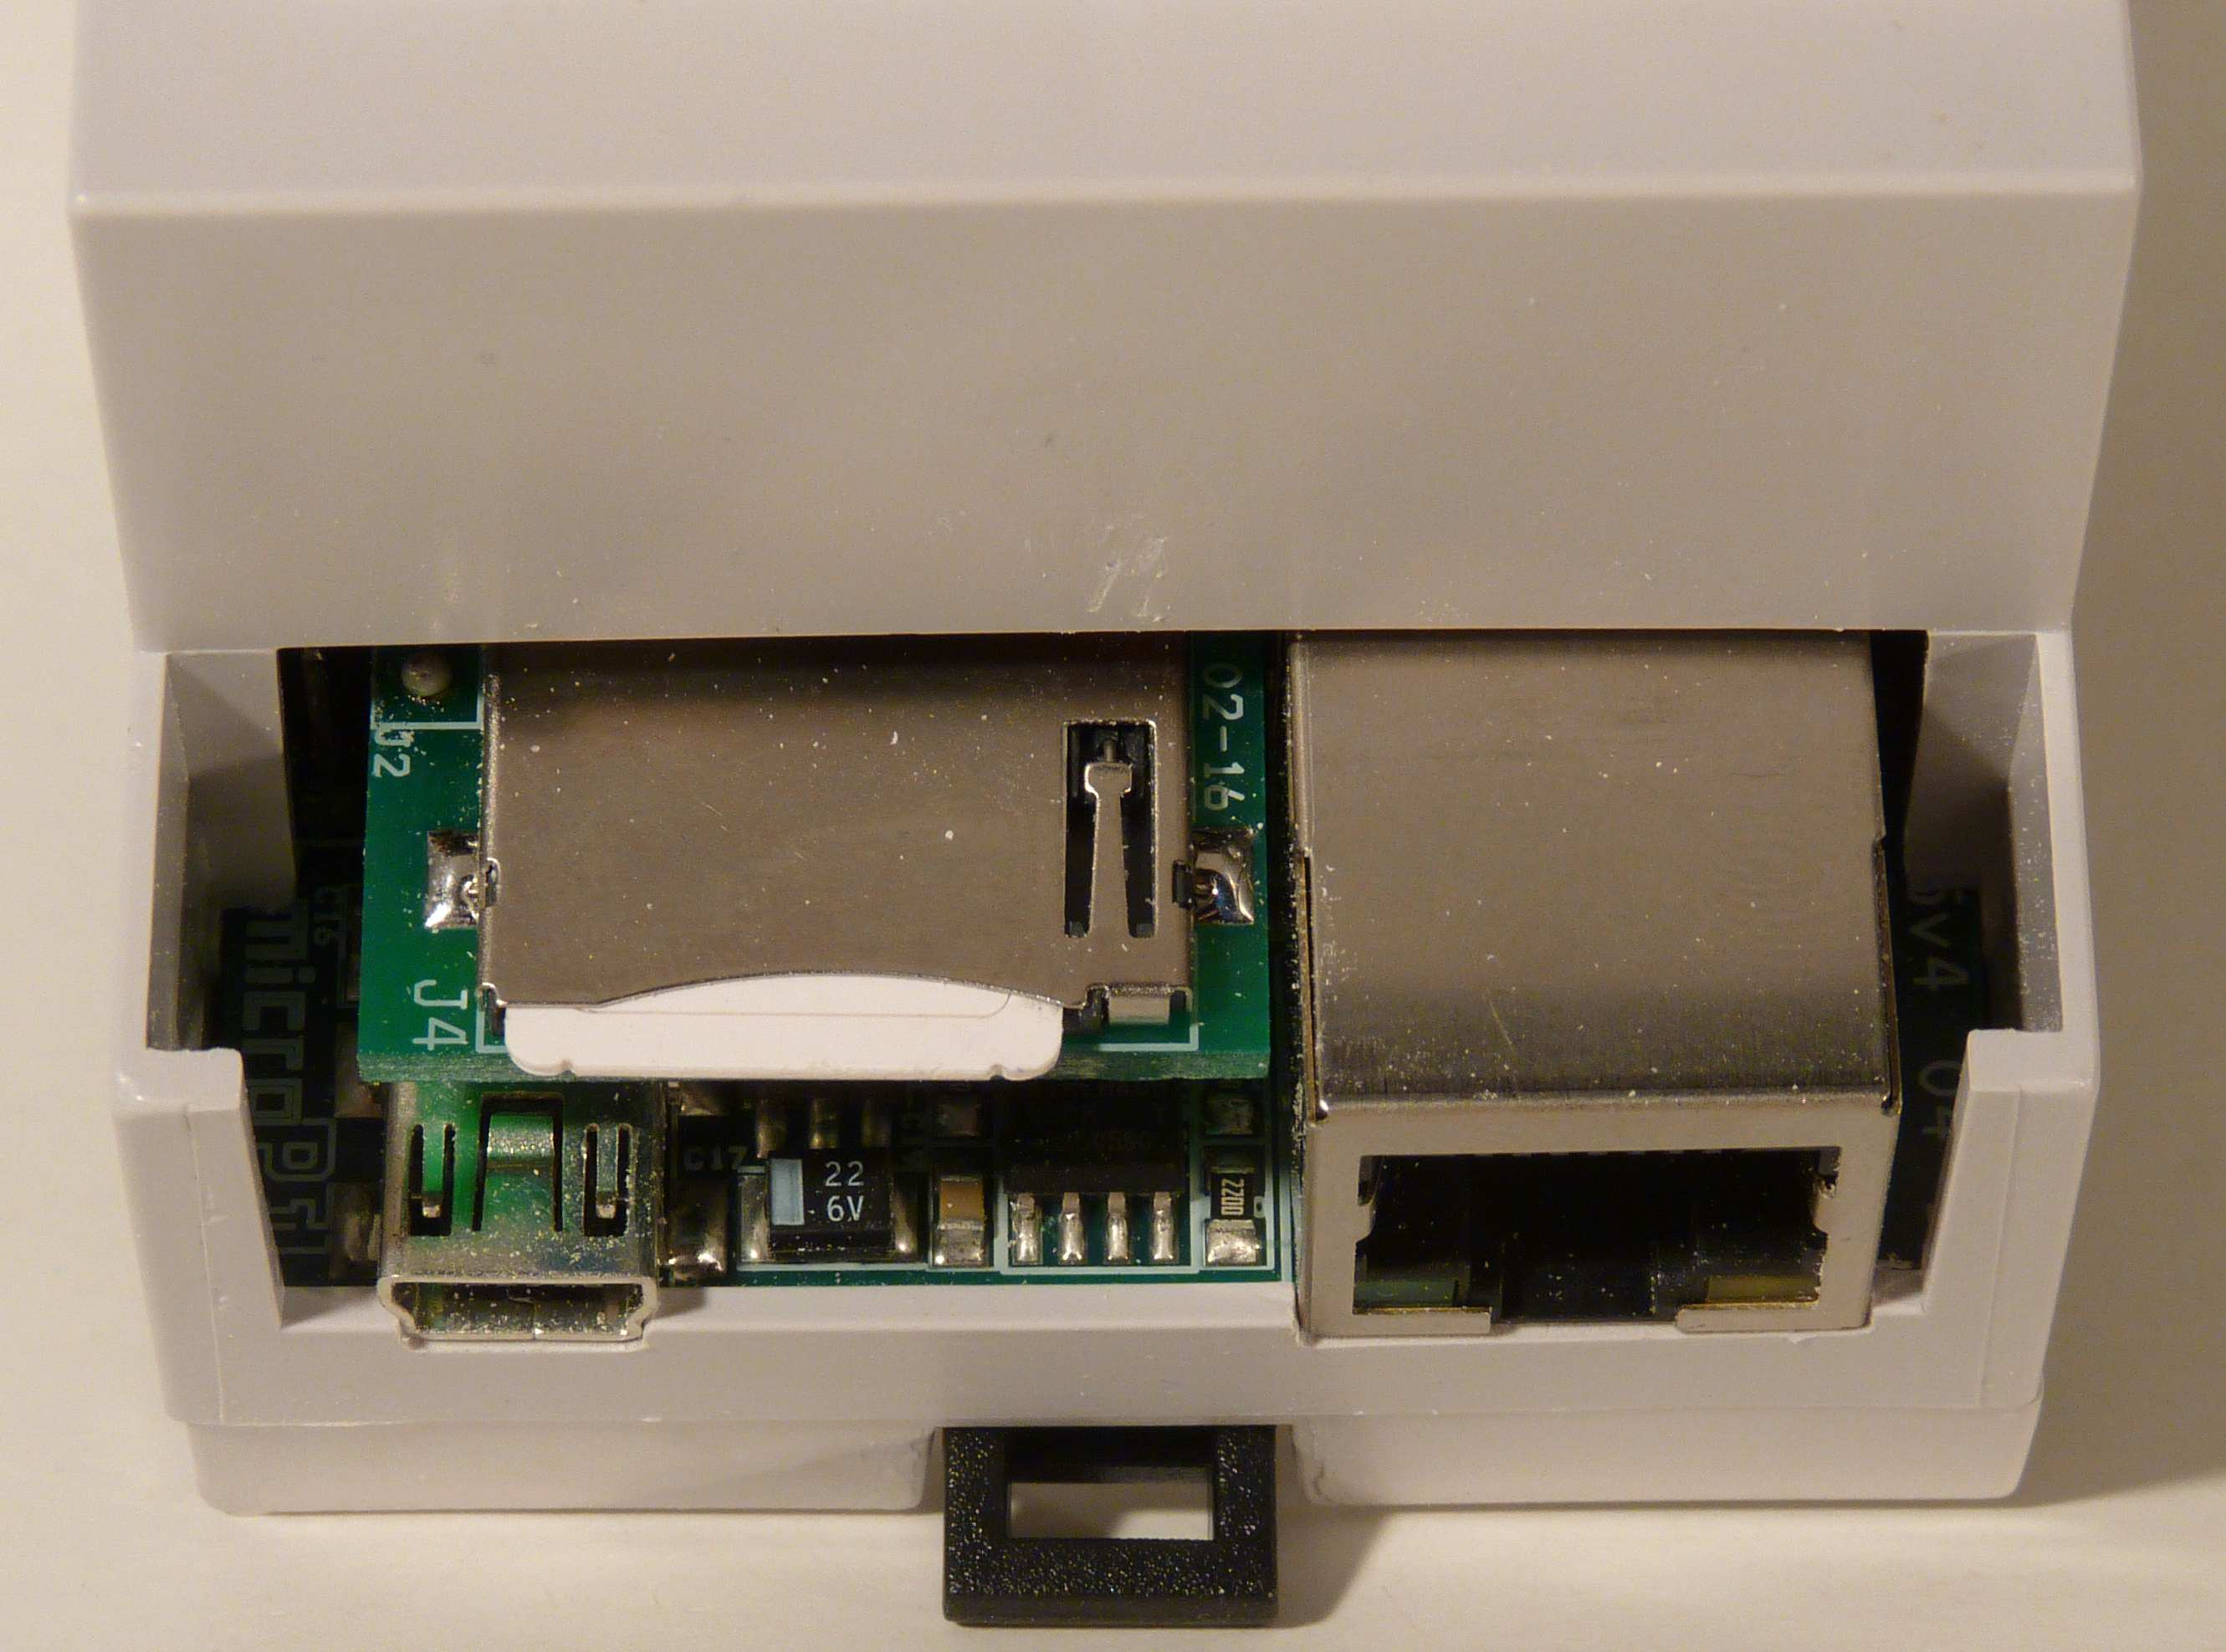 Umístění SIM karty pod krytkou Zatlačením se SIM karta uvolní z držáku Napájení a příkon Komunikátor CA5/ automat MCA45 se napájí, stejně jako všechna ostatní zařízení MICROPEL, stejnosměrným napětím